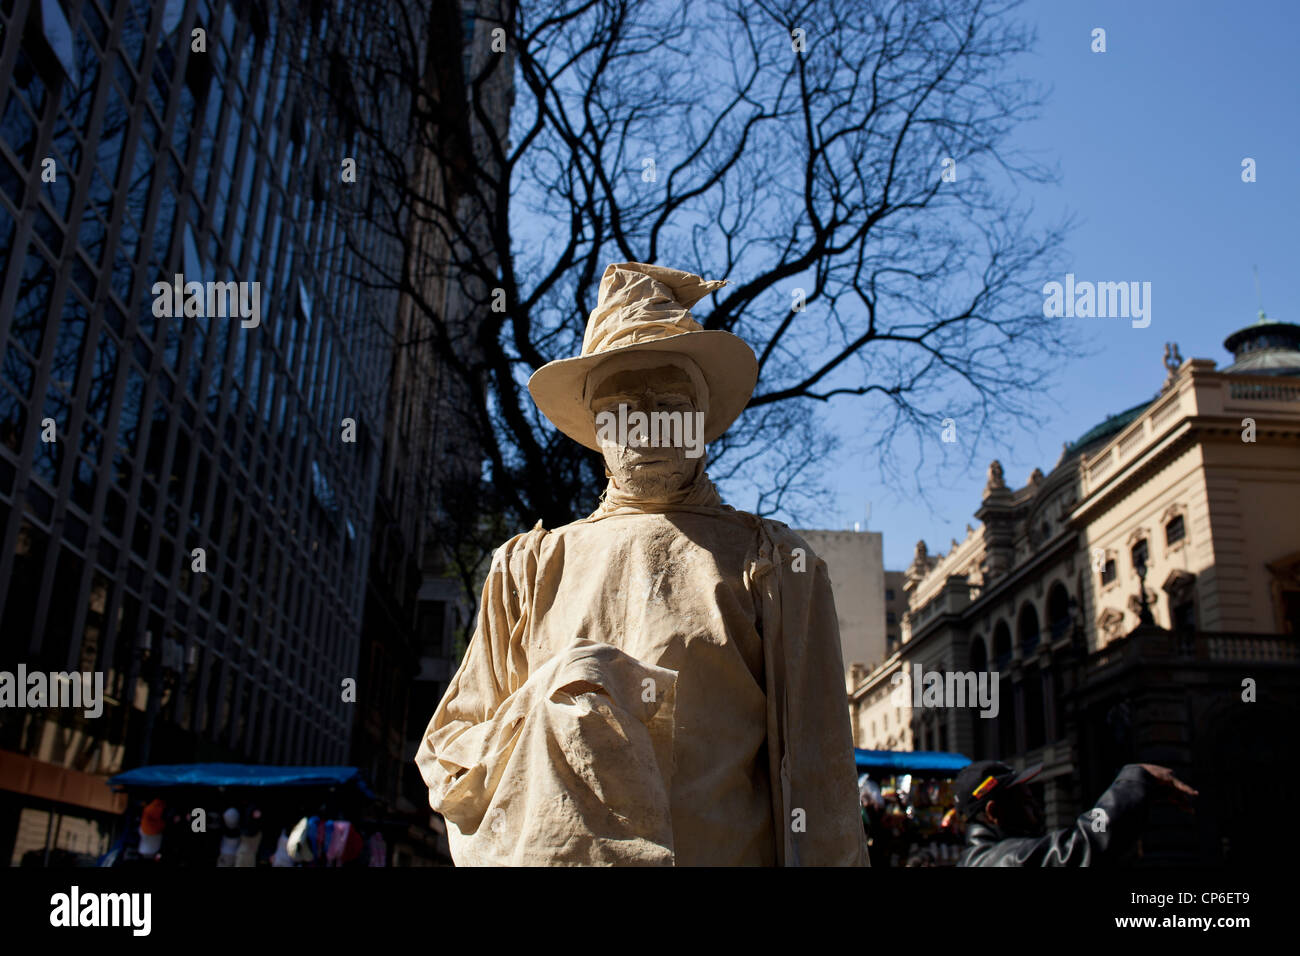 Lebende Statue Innenstadt von Sao Paulo Brasilien Pantomime posieren stundenlang auf Straße wie eine Statue mit realistischen Statue wie Make-up Stockfoto